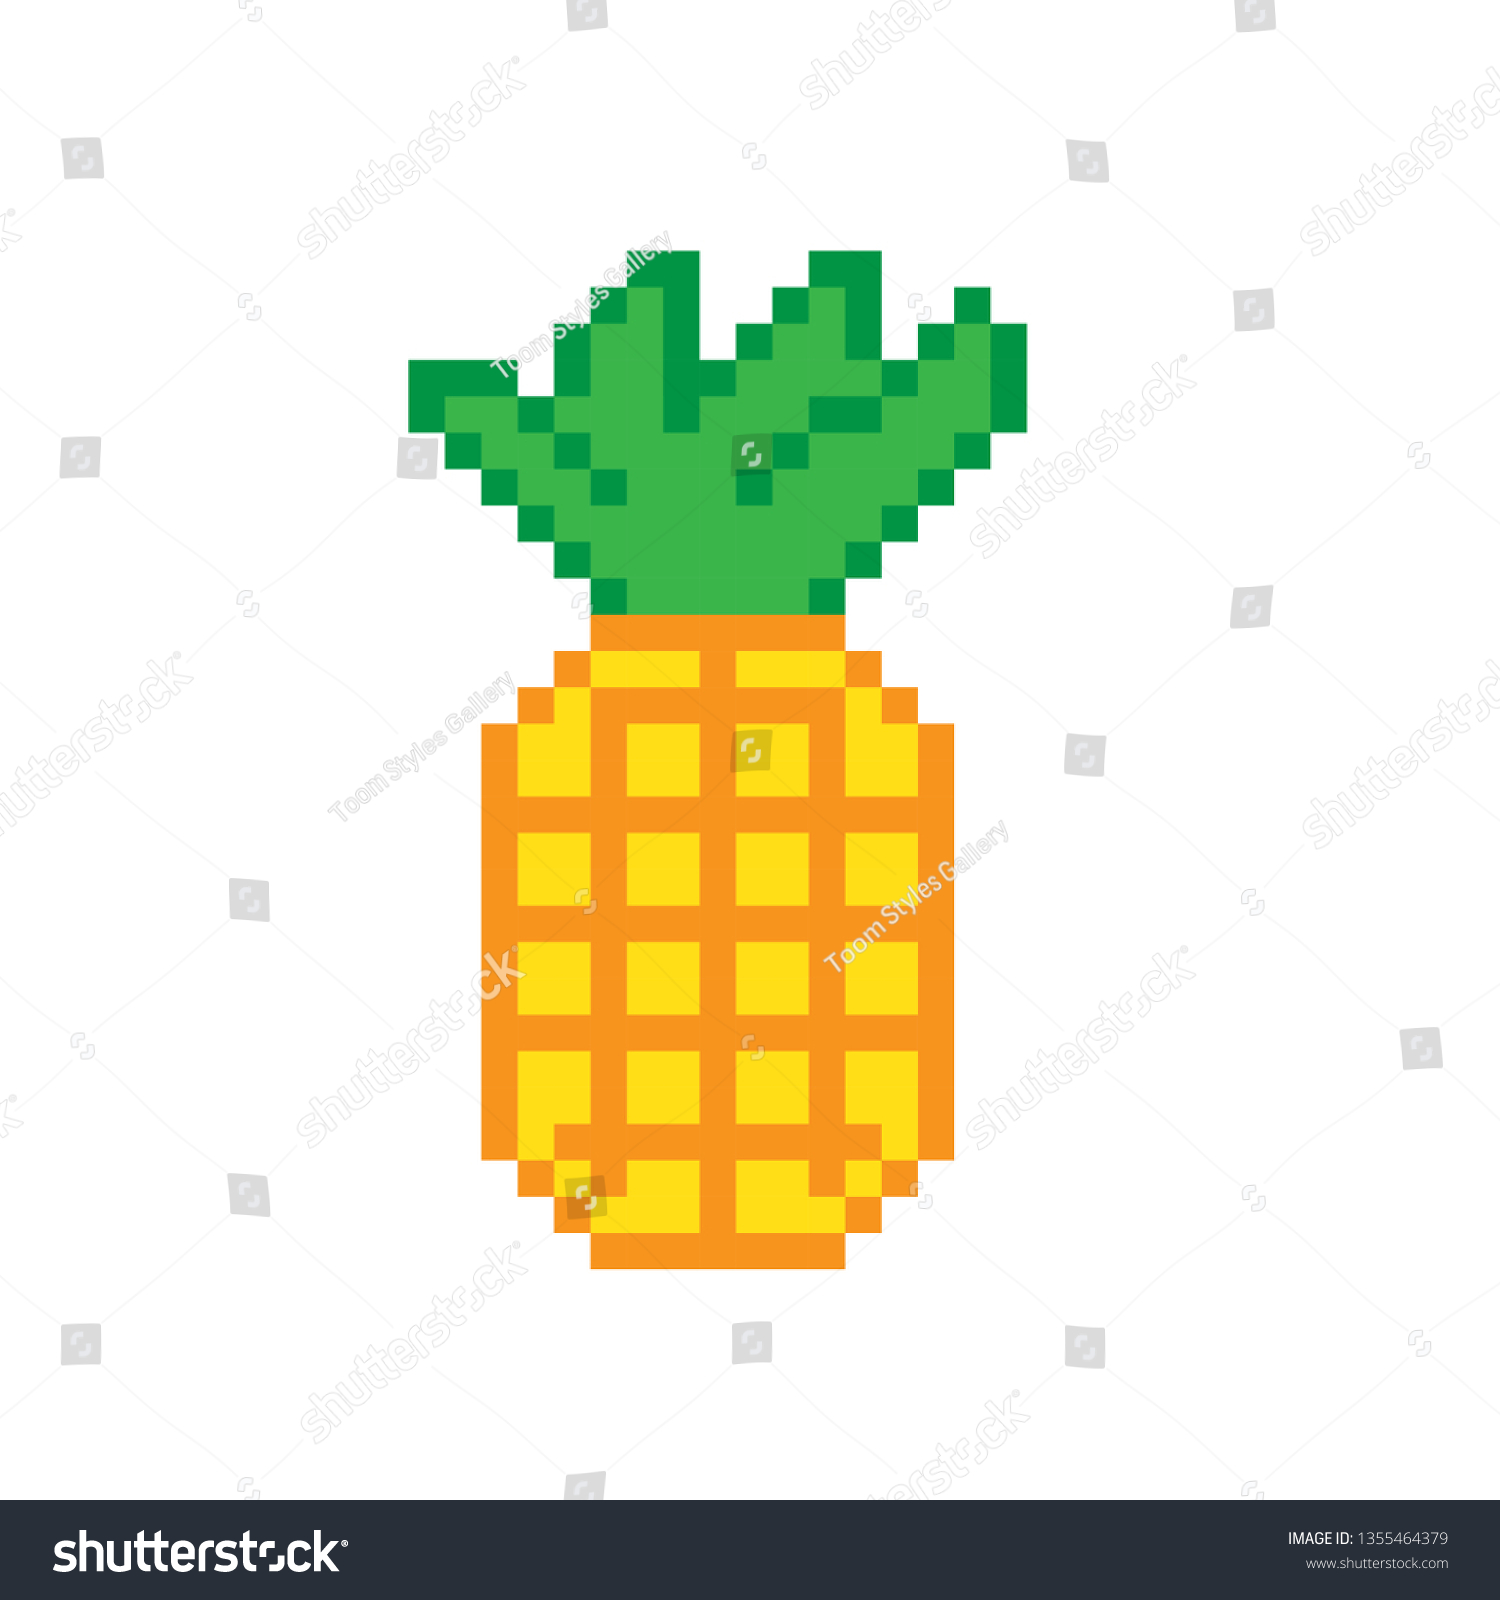 pixel art pineapple on white background stock vector royalty free 1355464379 https www shutterstock com image vector pixel art pineapple on white background 1355464379